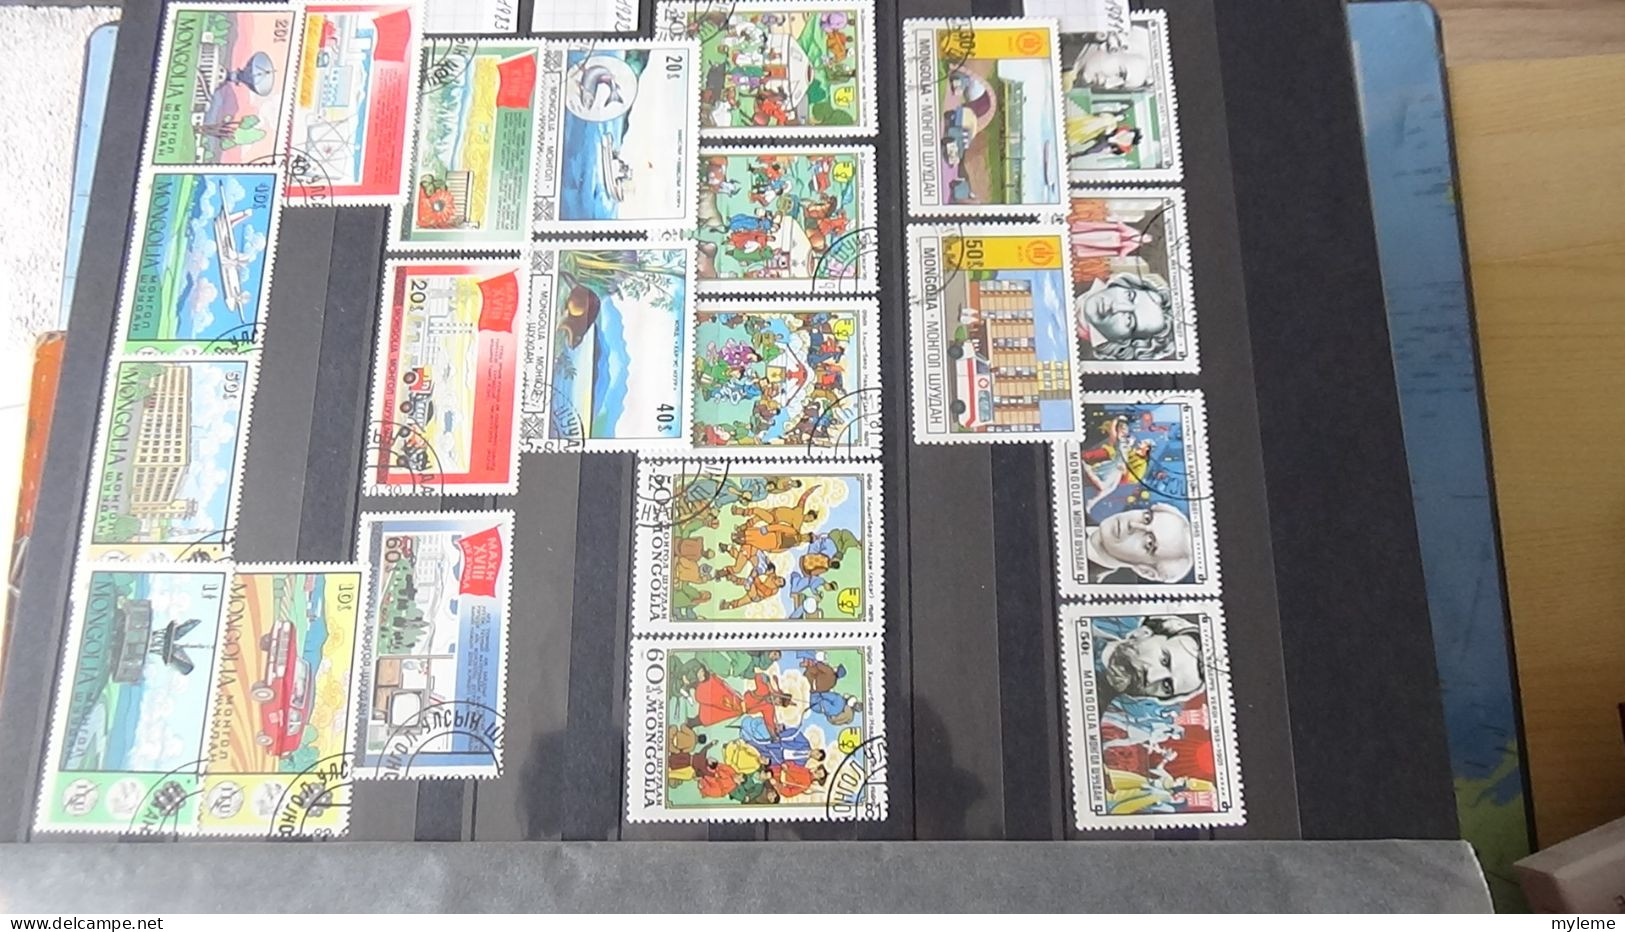 BG3 Ensemble de timbres de divers pays + France PA N° 16 à 37 ** Cote 891 euros. A saisir !!!